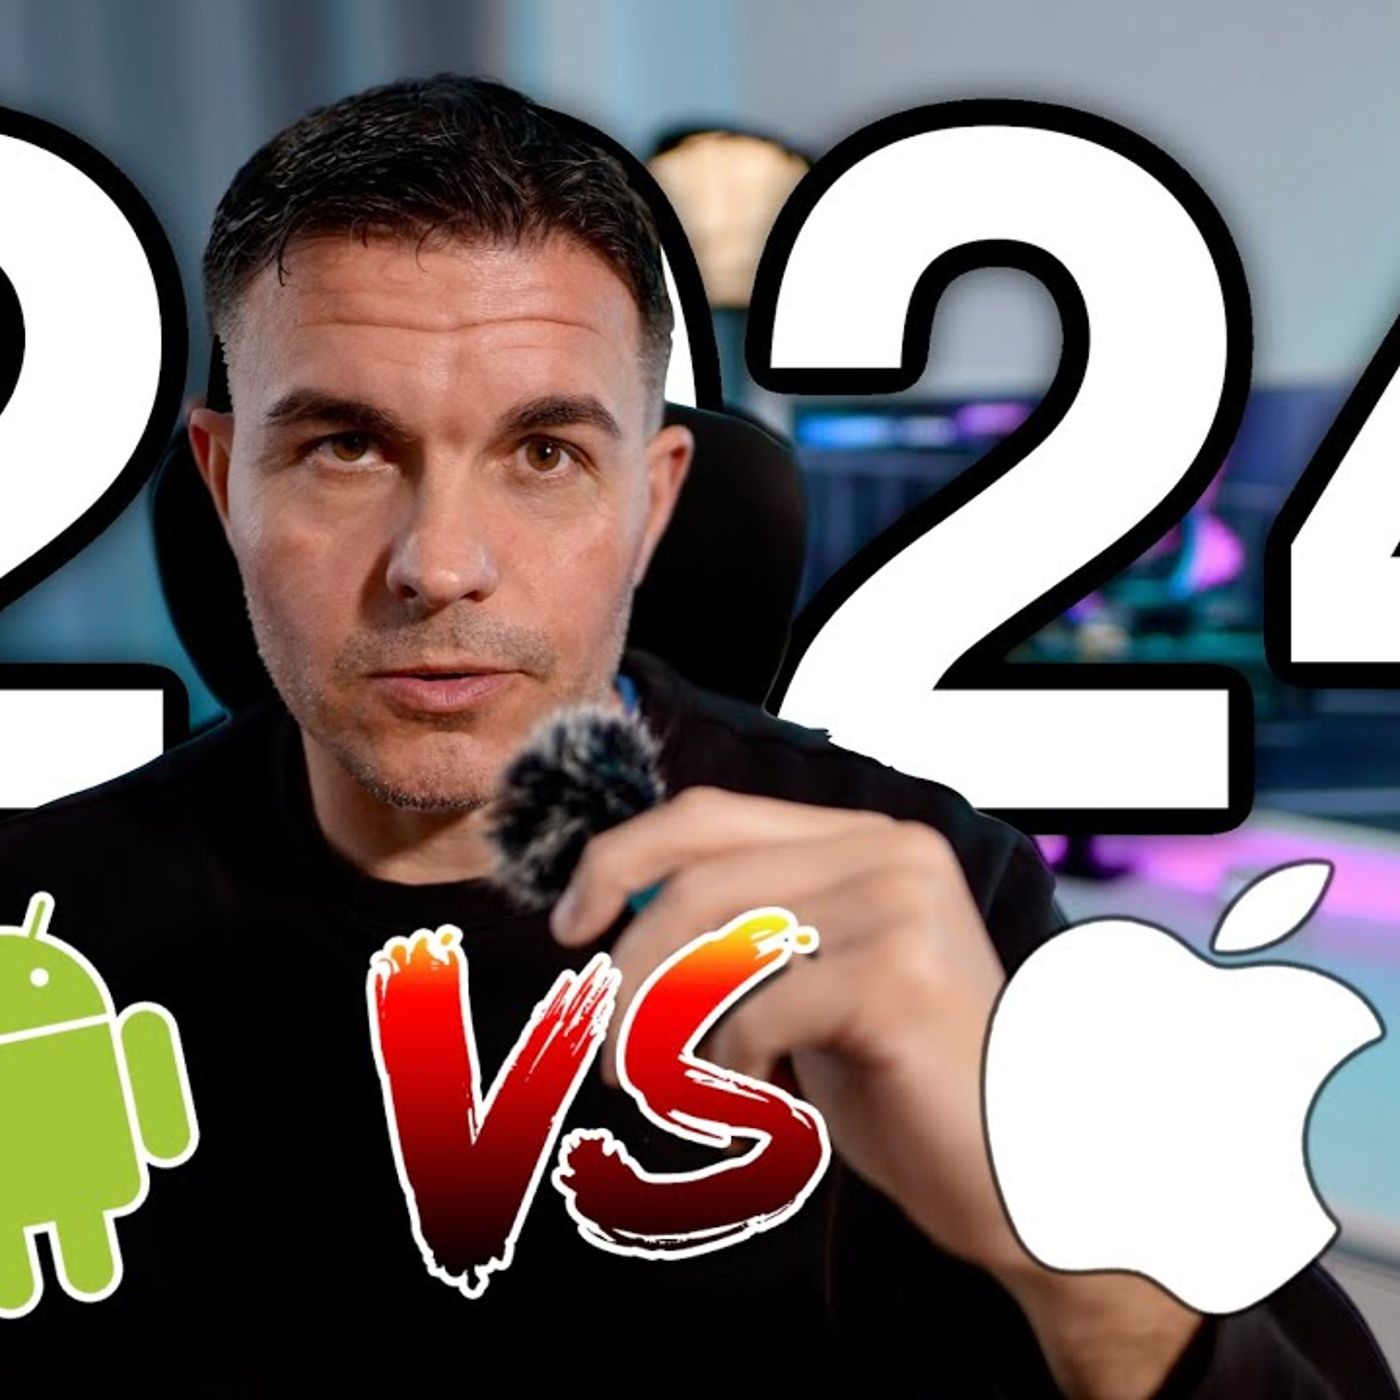 Android VS IOS en 2024 (mi opinion)